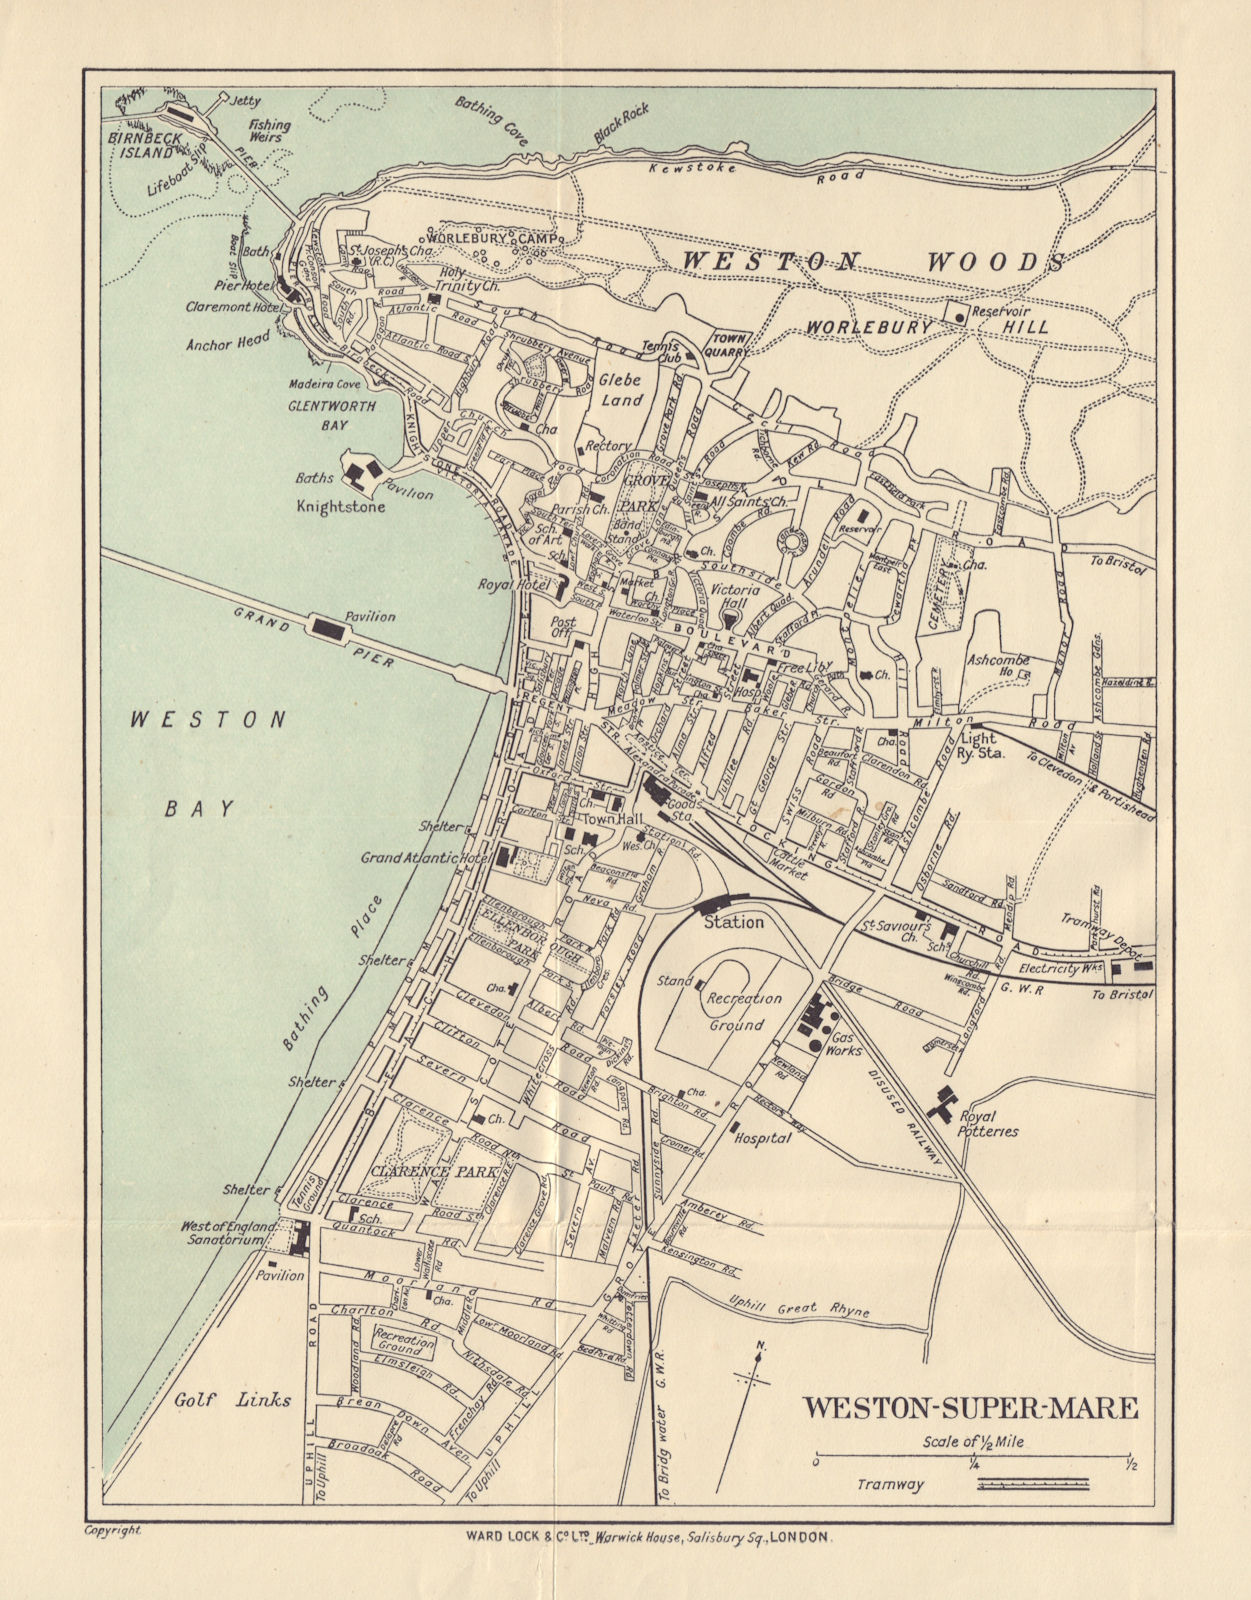 WESTON-SUPER-MARE vintage tourist town city plan. Somerset. WARD LOCK 1912 map